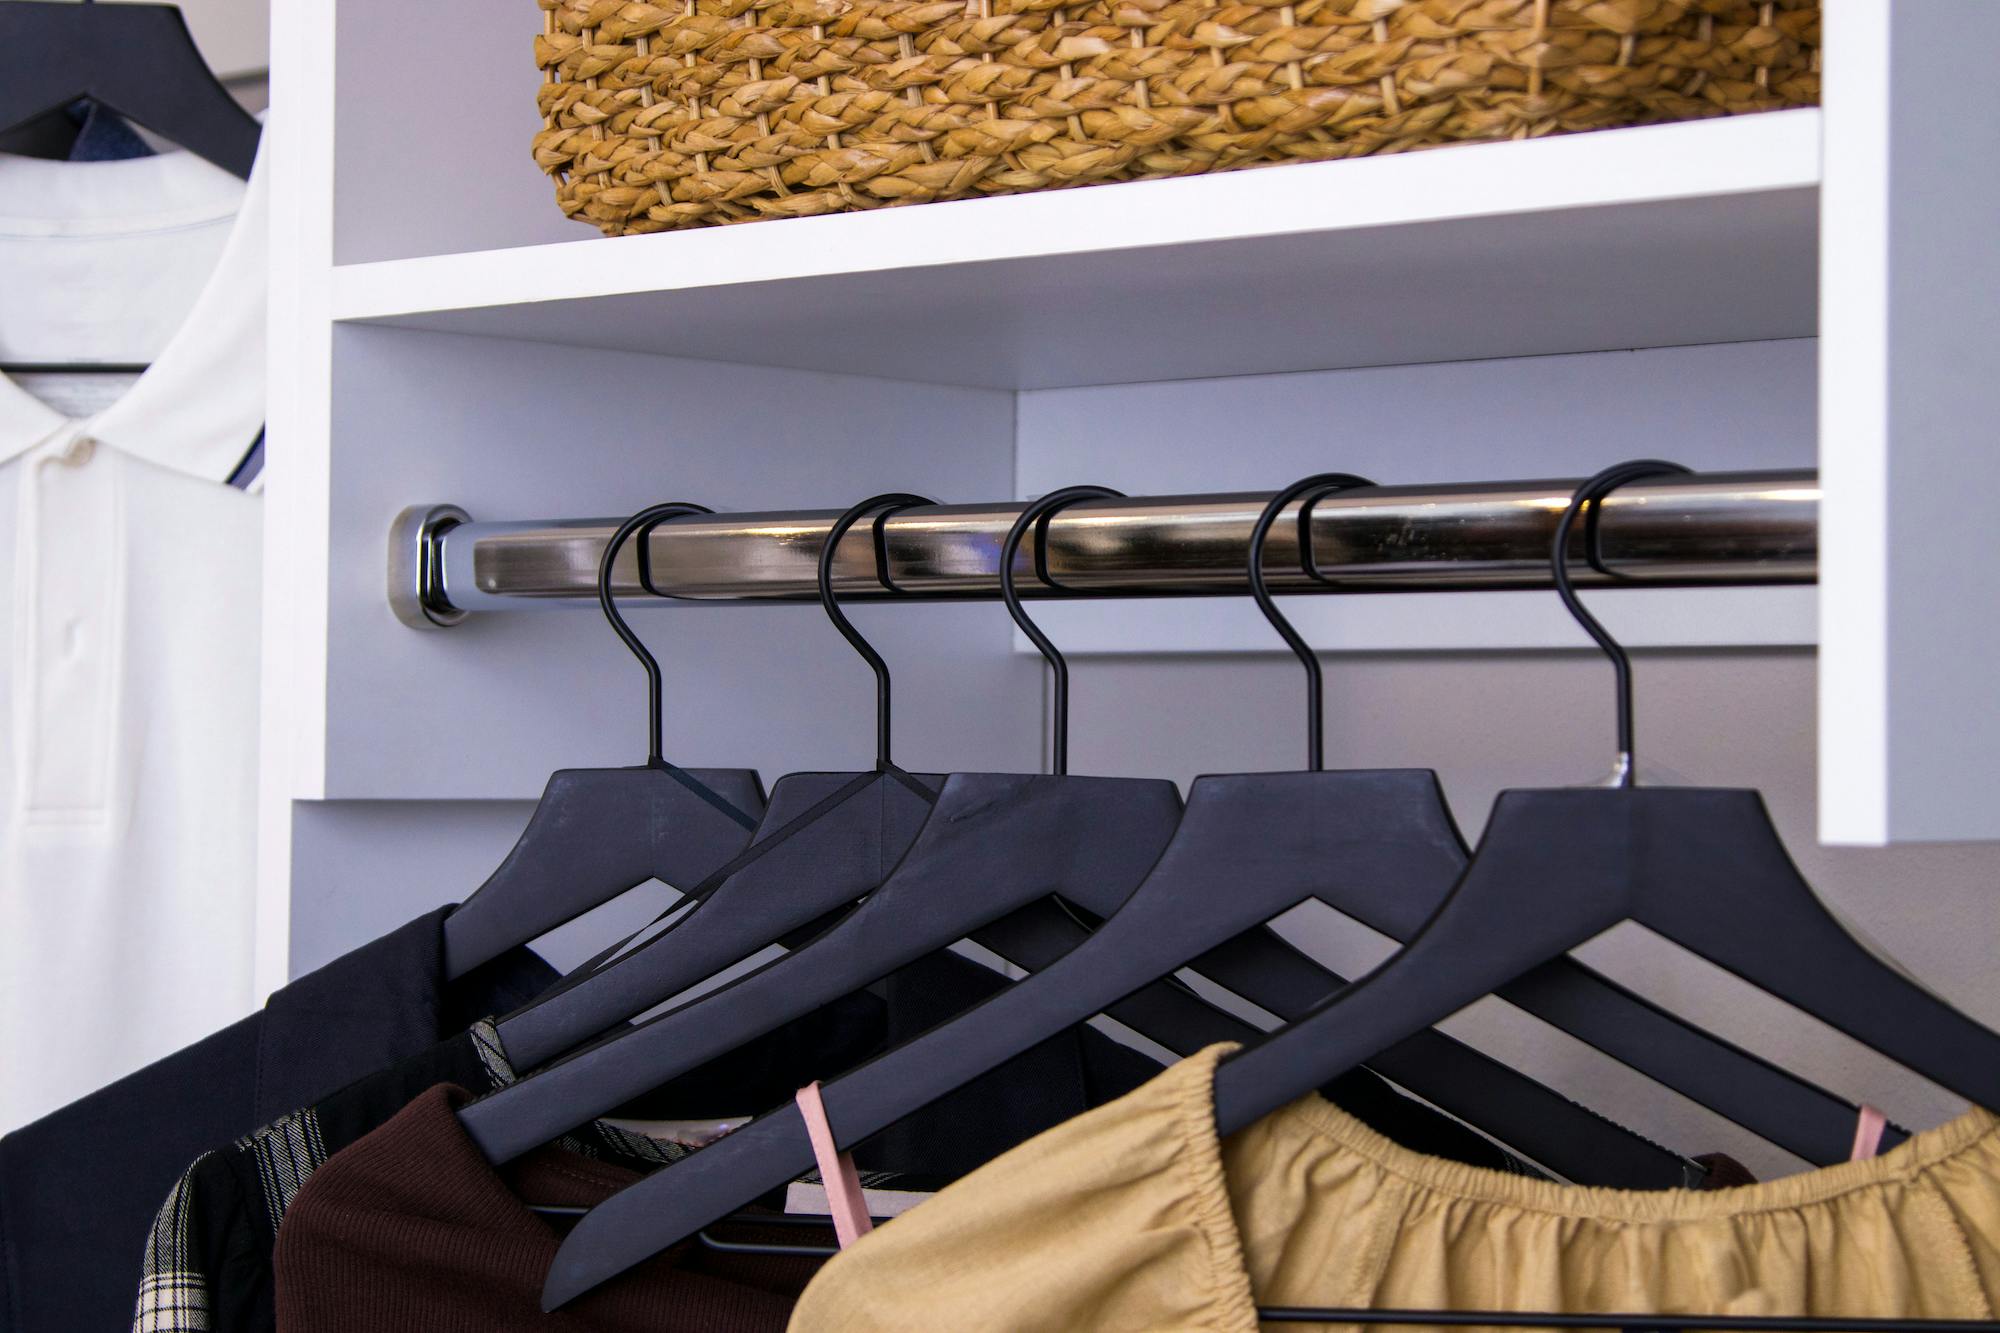 Hangers in closet